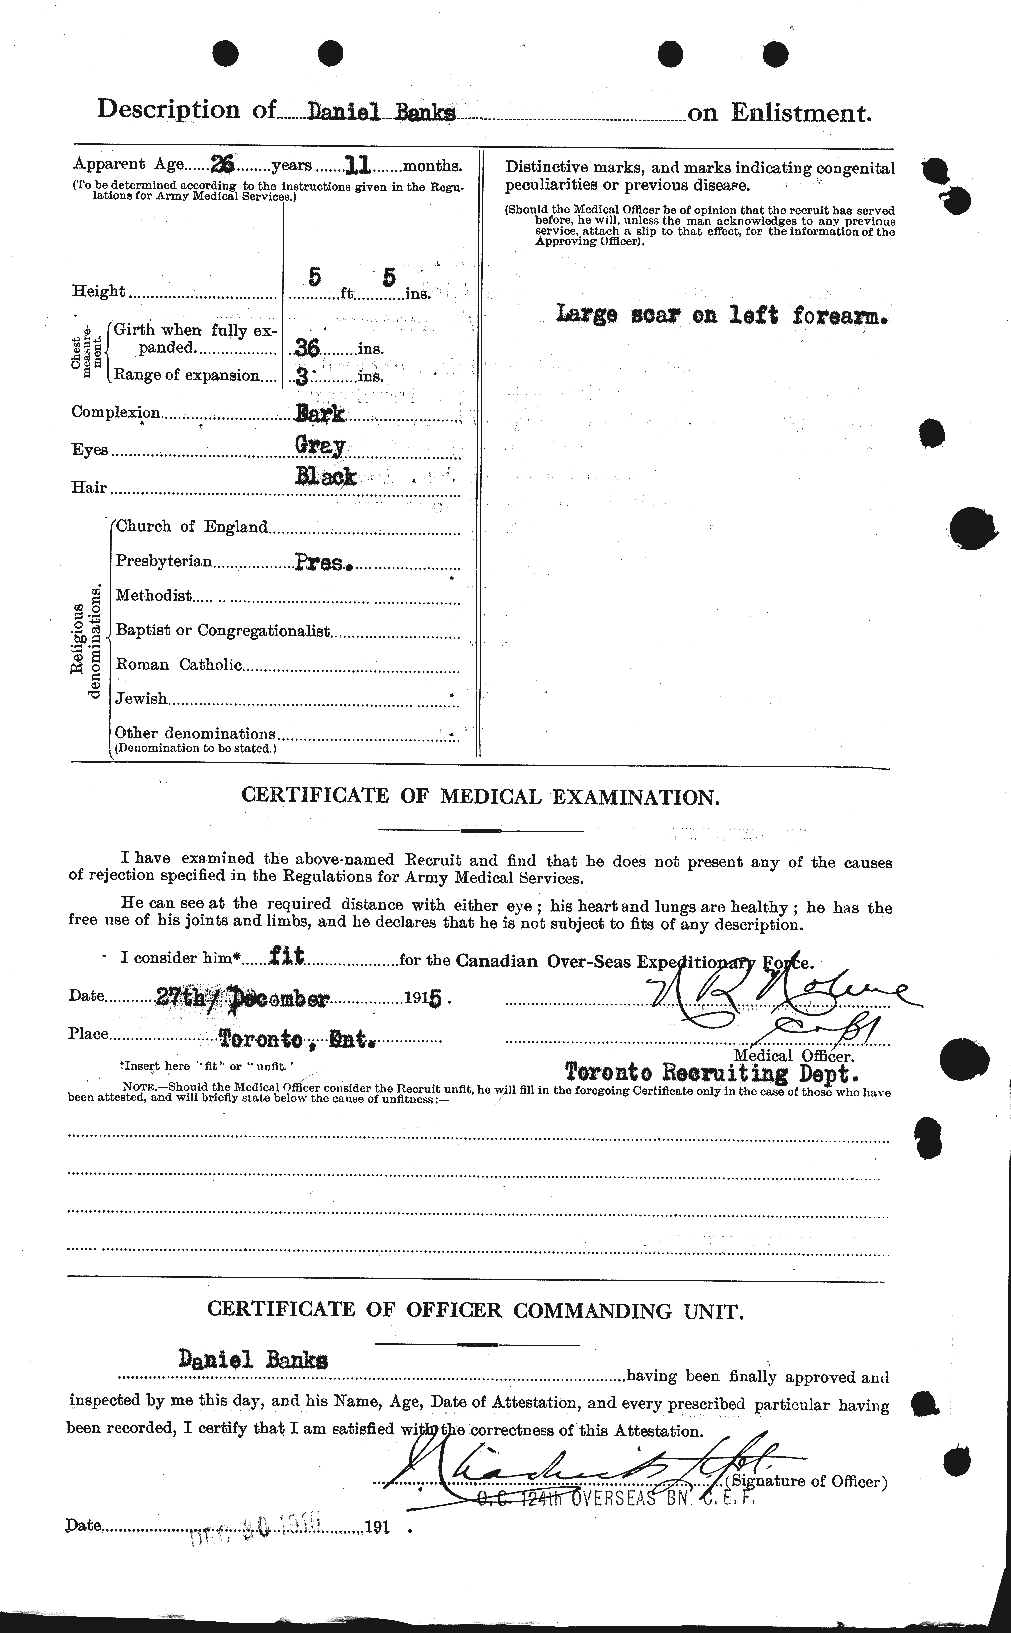 Dossiers du Personnel de la Première Guerre mondiale - CEC 219249b